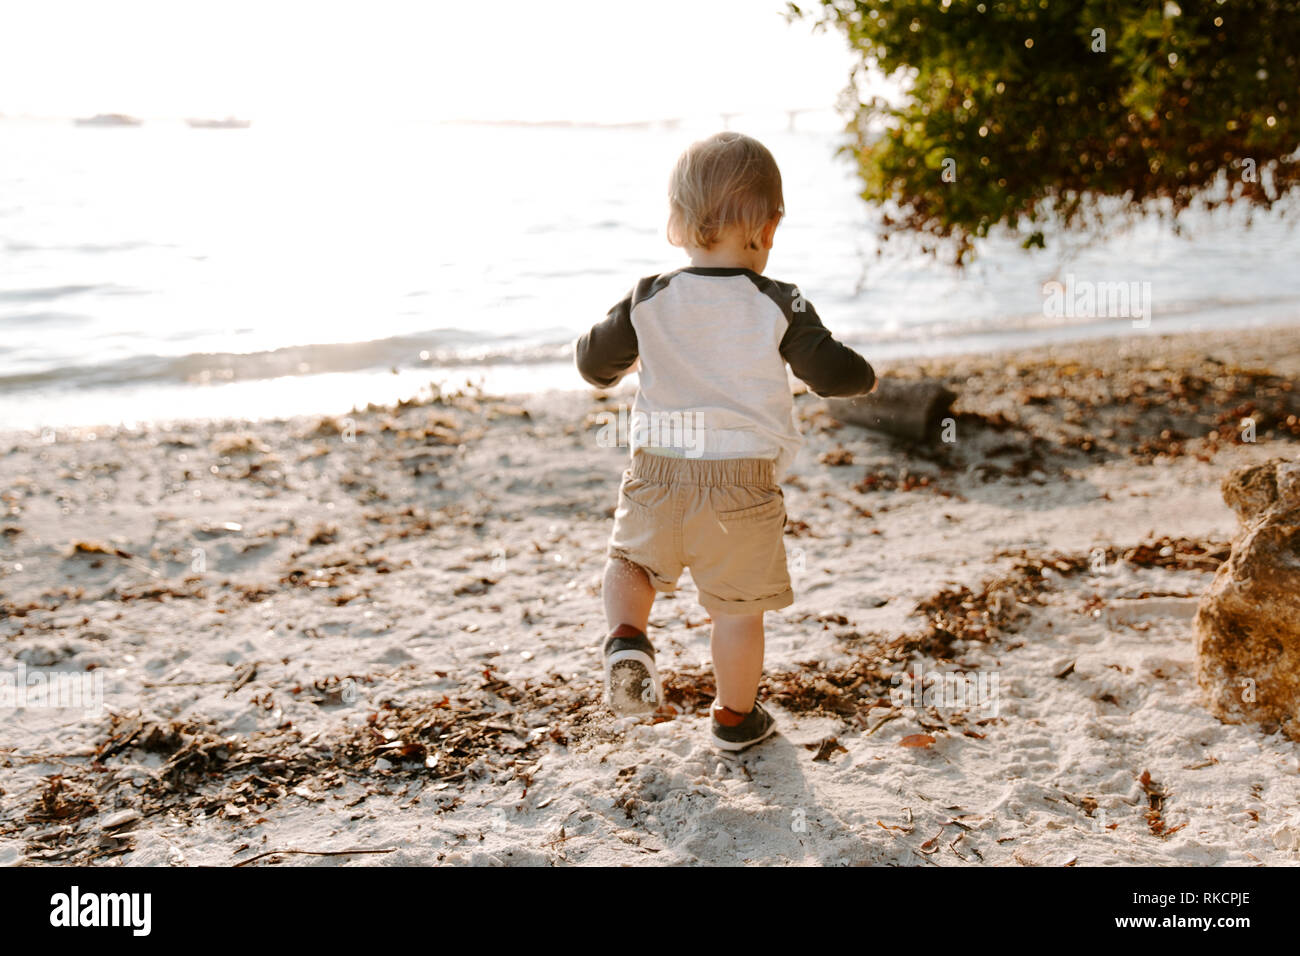 Precioso lindo Adorably Happy Baby Boy niño sonriente y jugando en la arena de la playa al lado del agua del océano fuera durante la puesta de sol en el verano Foto de stock